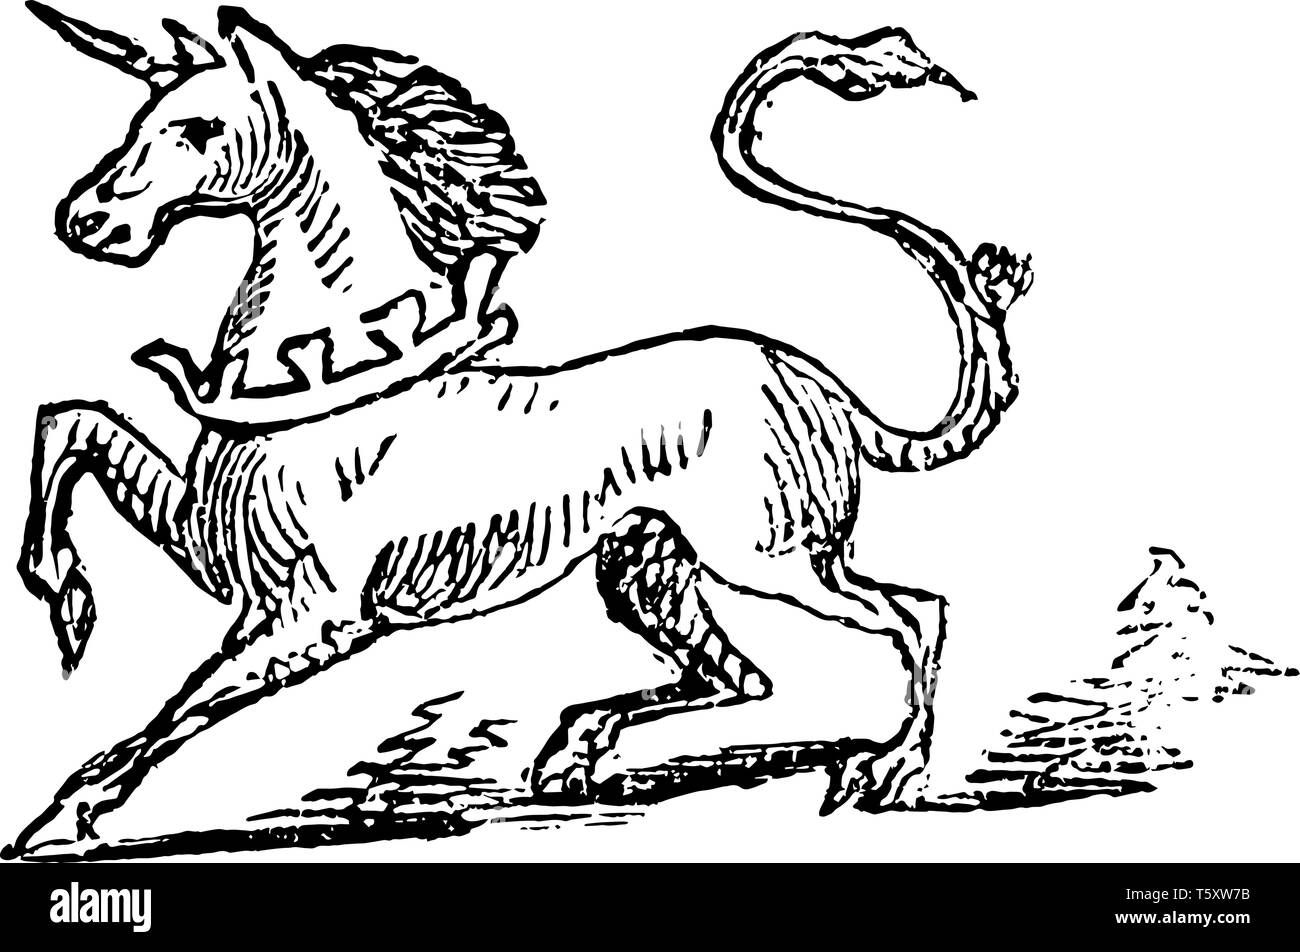 Unicornio animal hacia el lado izquierdo, la línea vintage de dibujo o ilustración grabado Ilustración del Vector